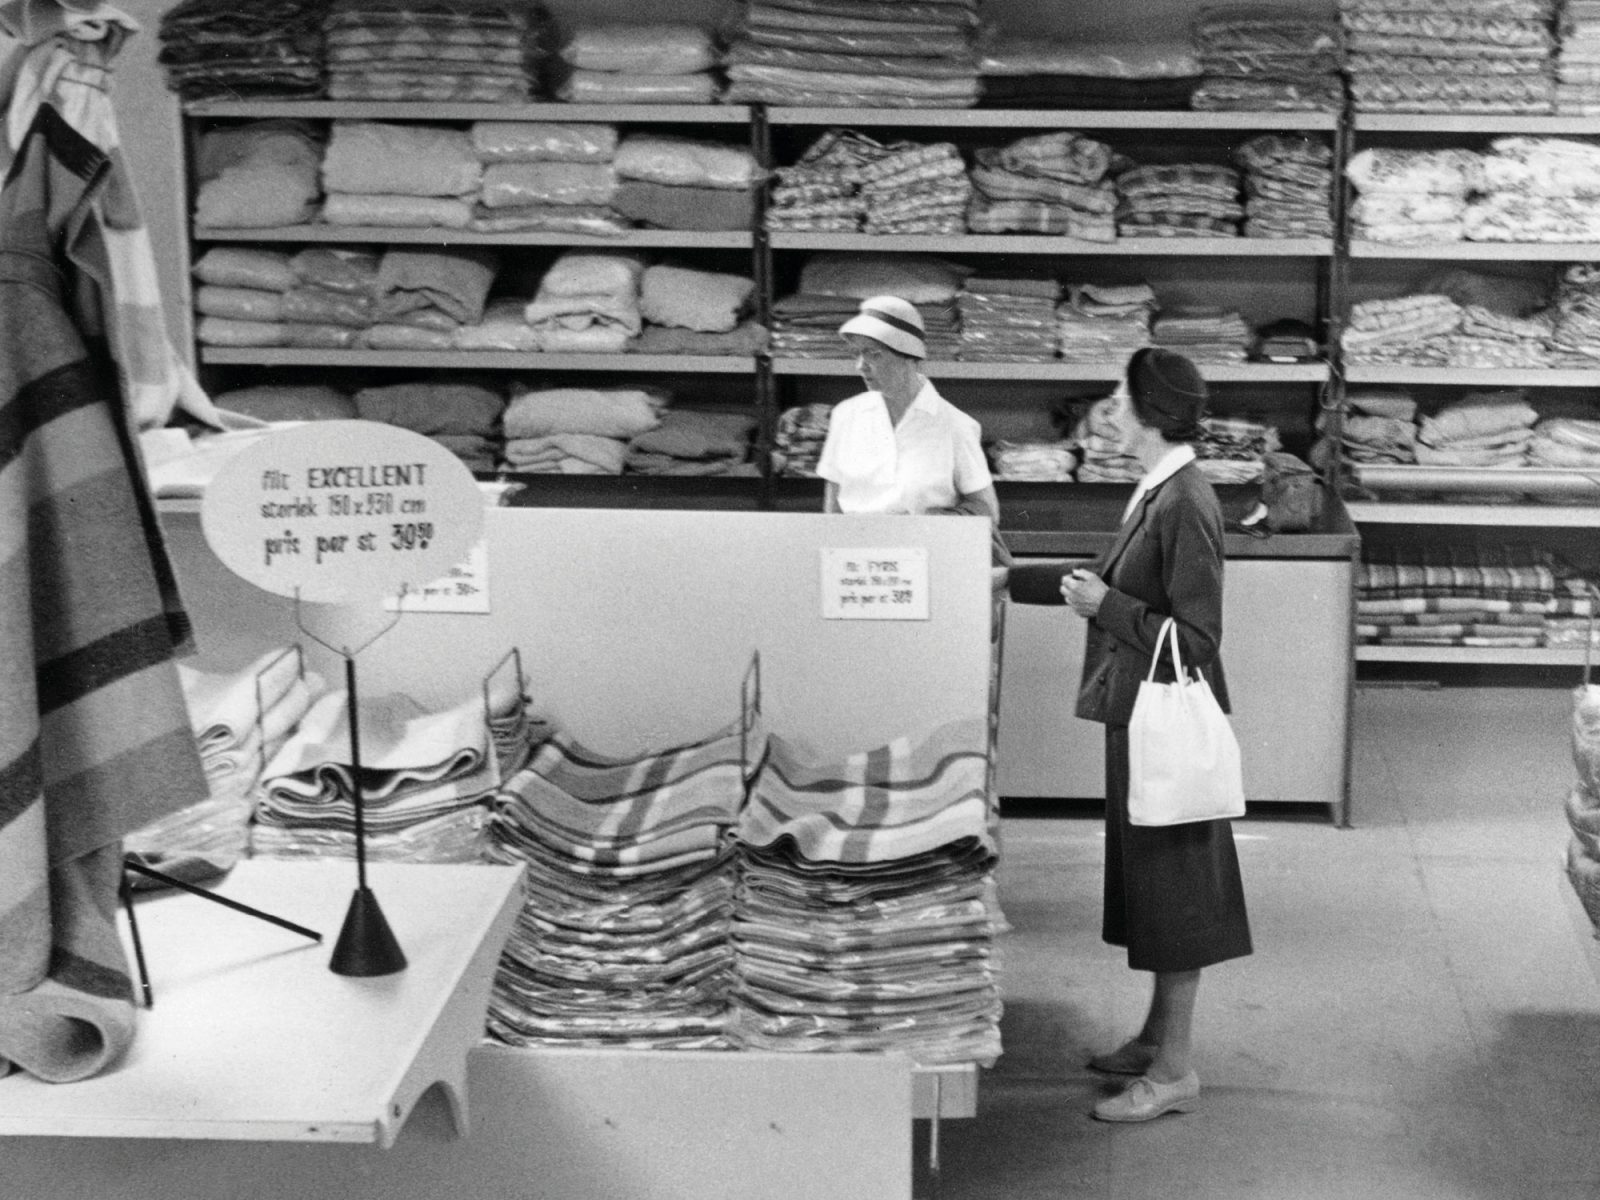 Textilavdelning på IKEA varuhus, två kvinnor i 1960-tals-kläder tittar på tyger.